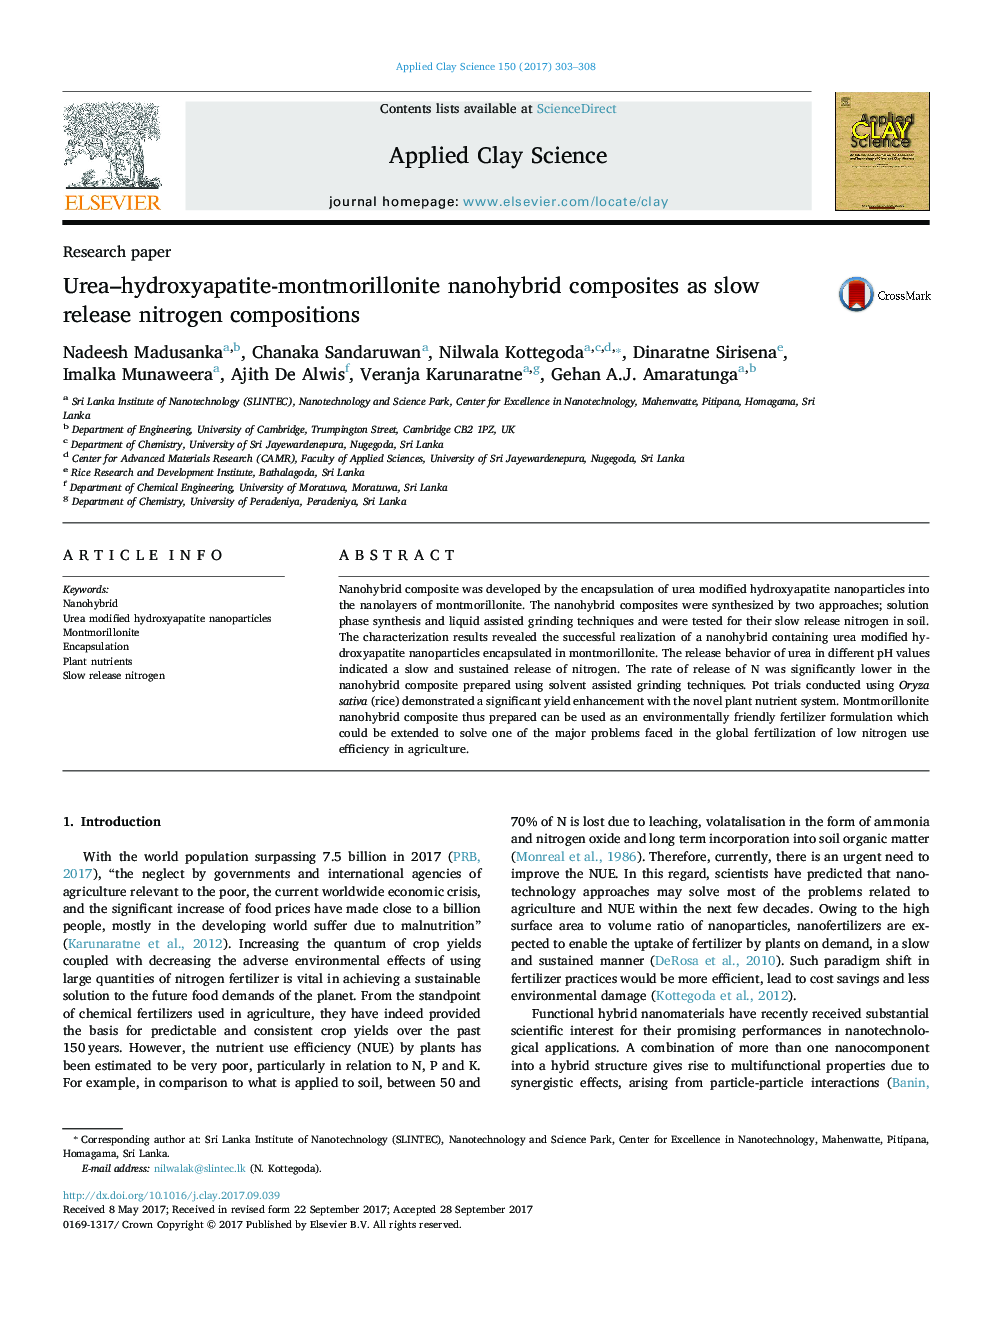 کامپوزیت های نانویایبرید اوره-هیدروکسی آپاتیت-مونتموریلونیت به عنوان ترکیبات نیتروژن آزاد آلی 